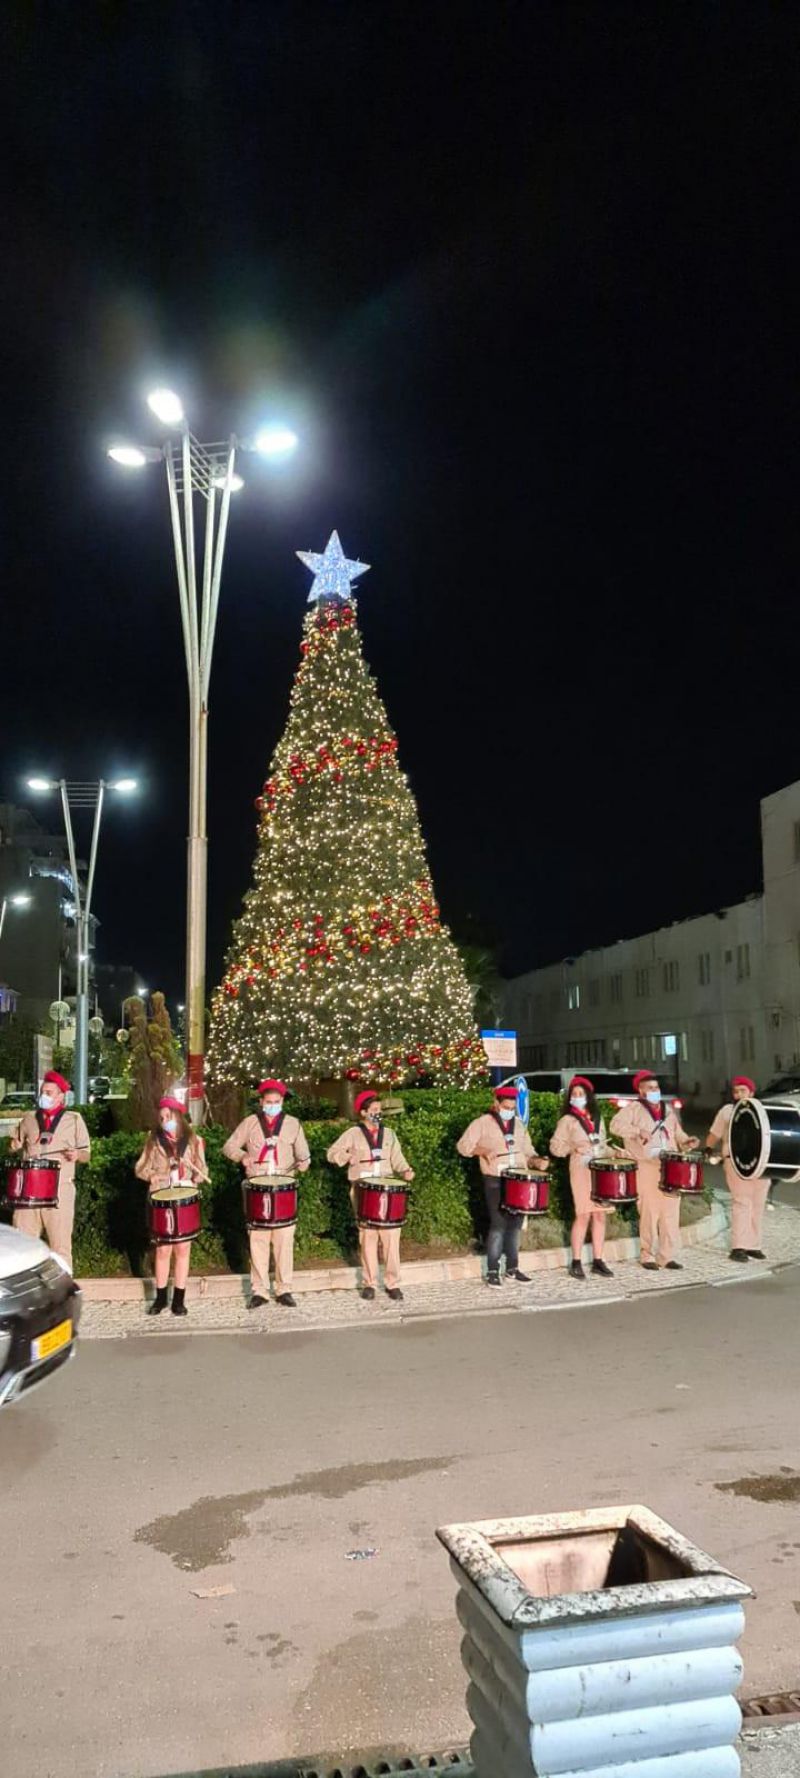 المراكز الجماهيرية- أسوار عكا تبادر إلى إضاءة شجرة الميلاد السنوية في المدينة